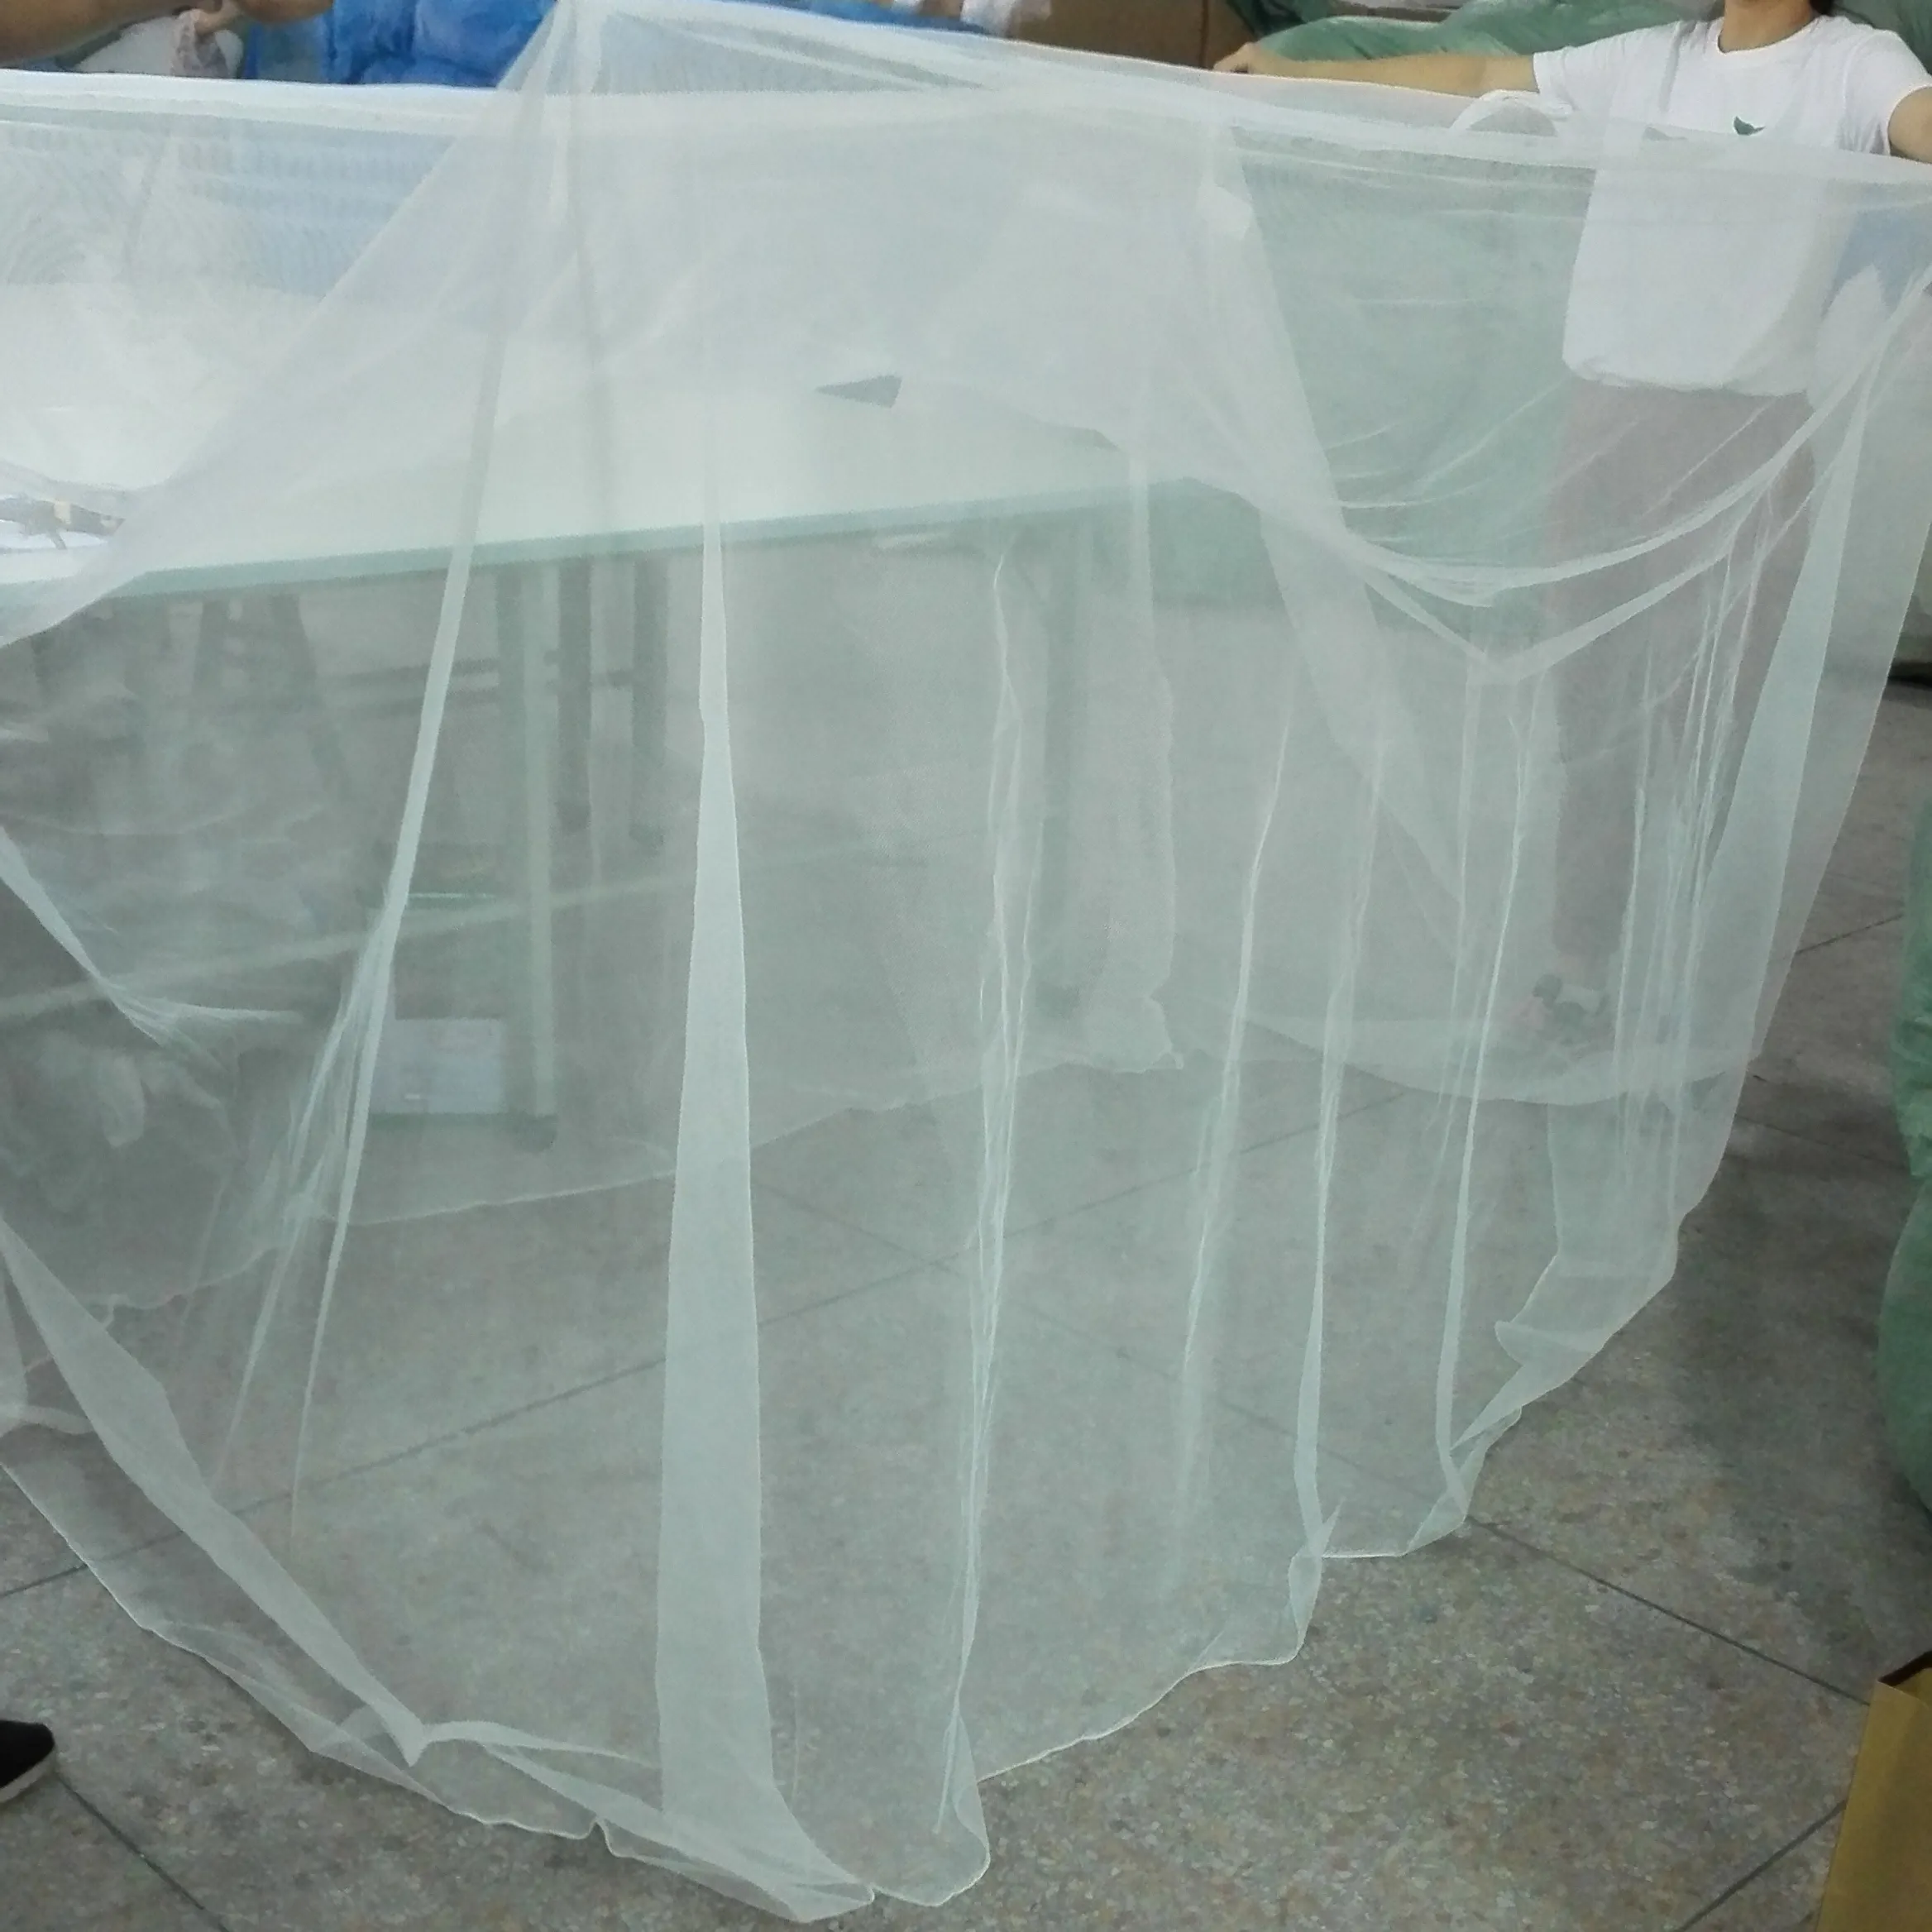 Whopes plan aprobación rey Rectangular mosquitera cama de 180 cm de largo x 160 cm de ancho x150cm en zona oestemosquitero plegable para cama